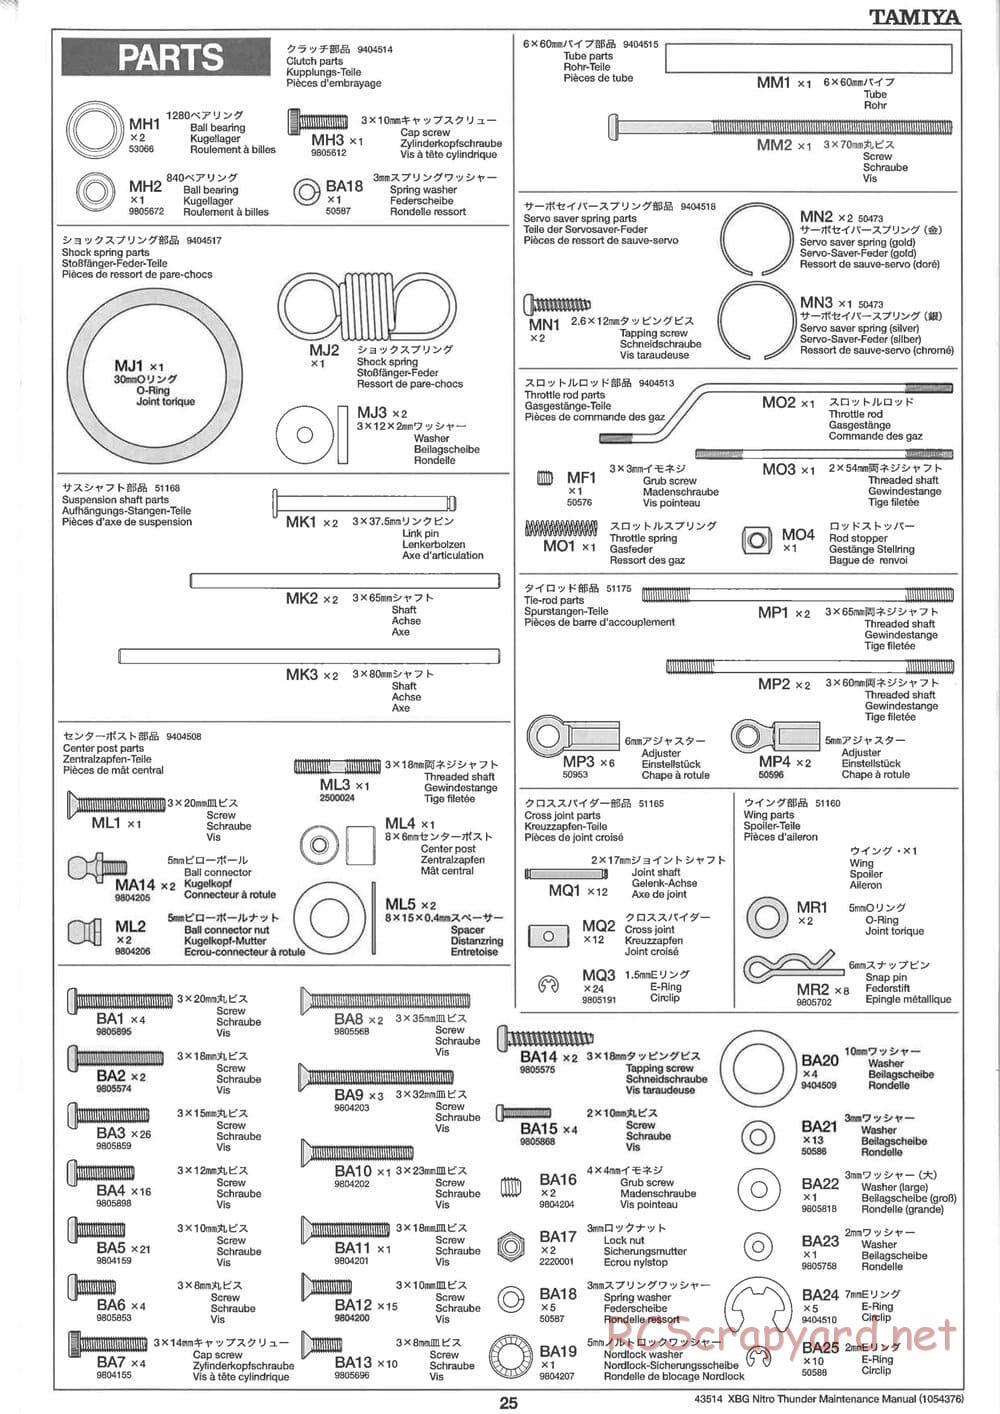 Tamiya - Nitro Thunder - NDF-01 Chassis - Manual - Page 25